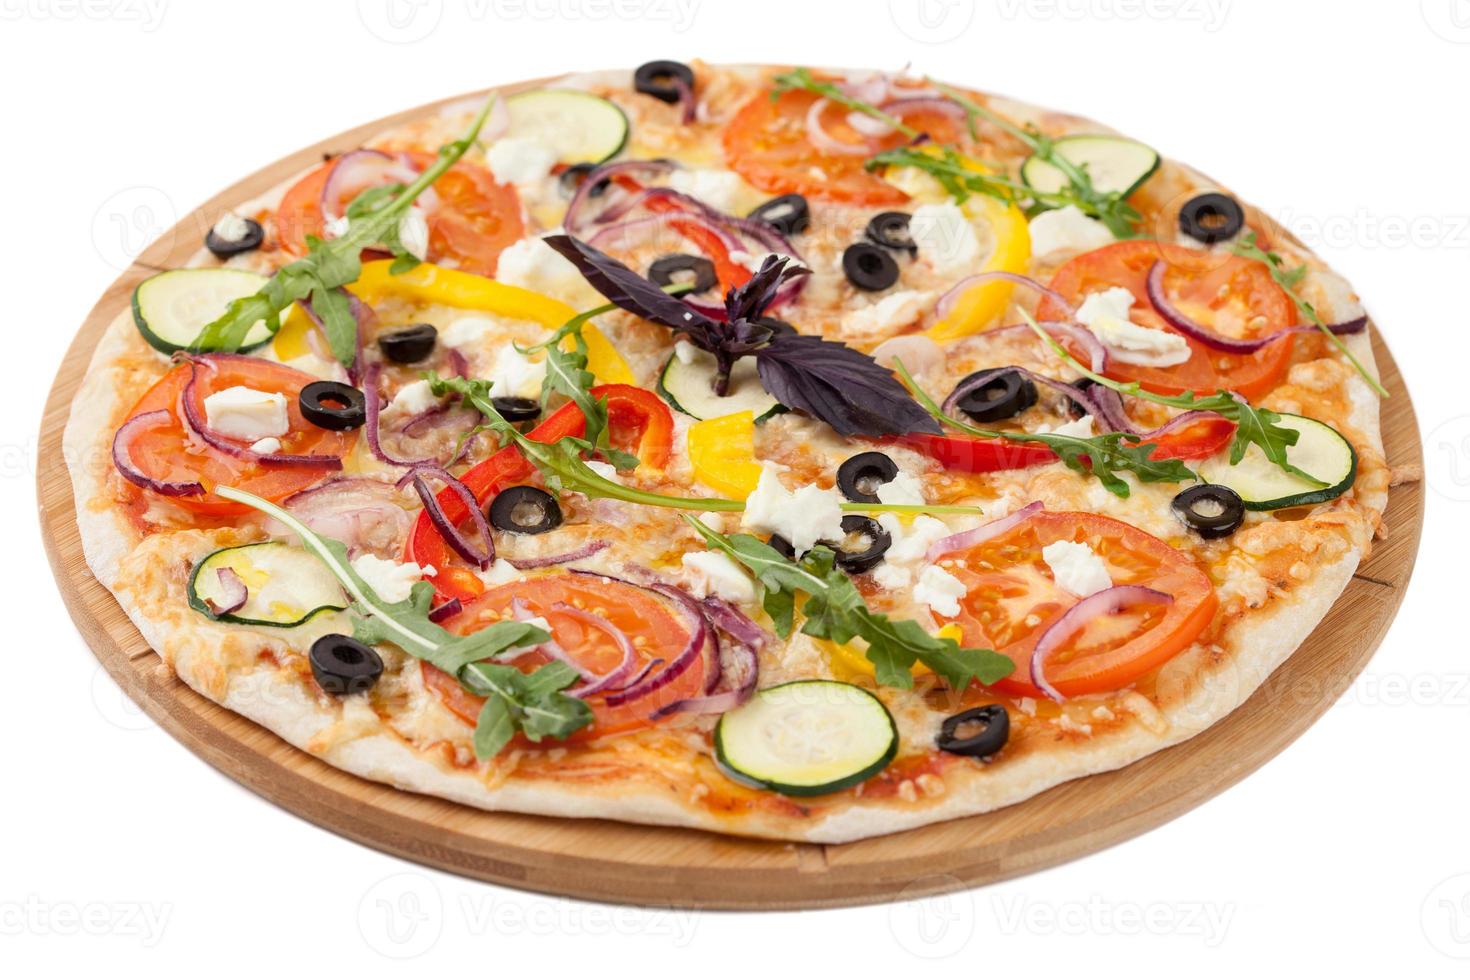 zelfgemaakte pizza op witte achtergrond foto